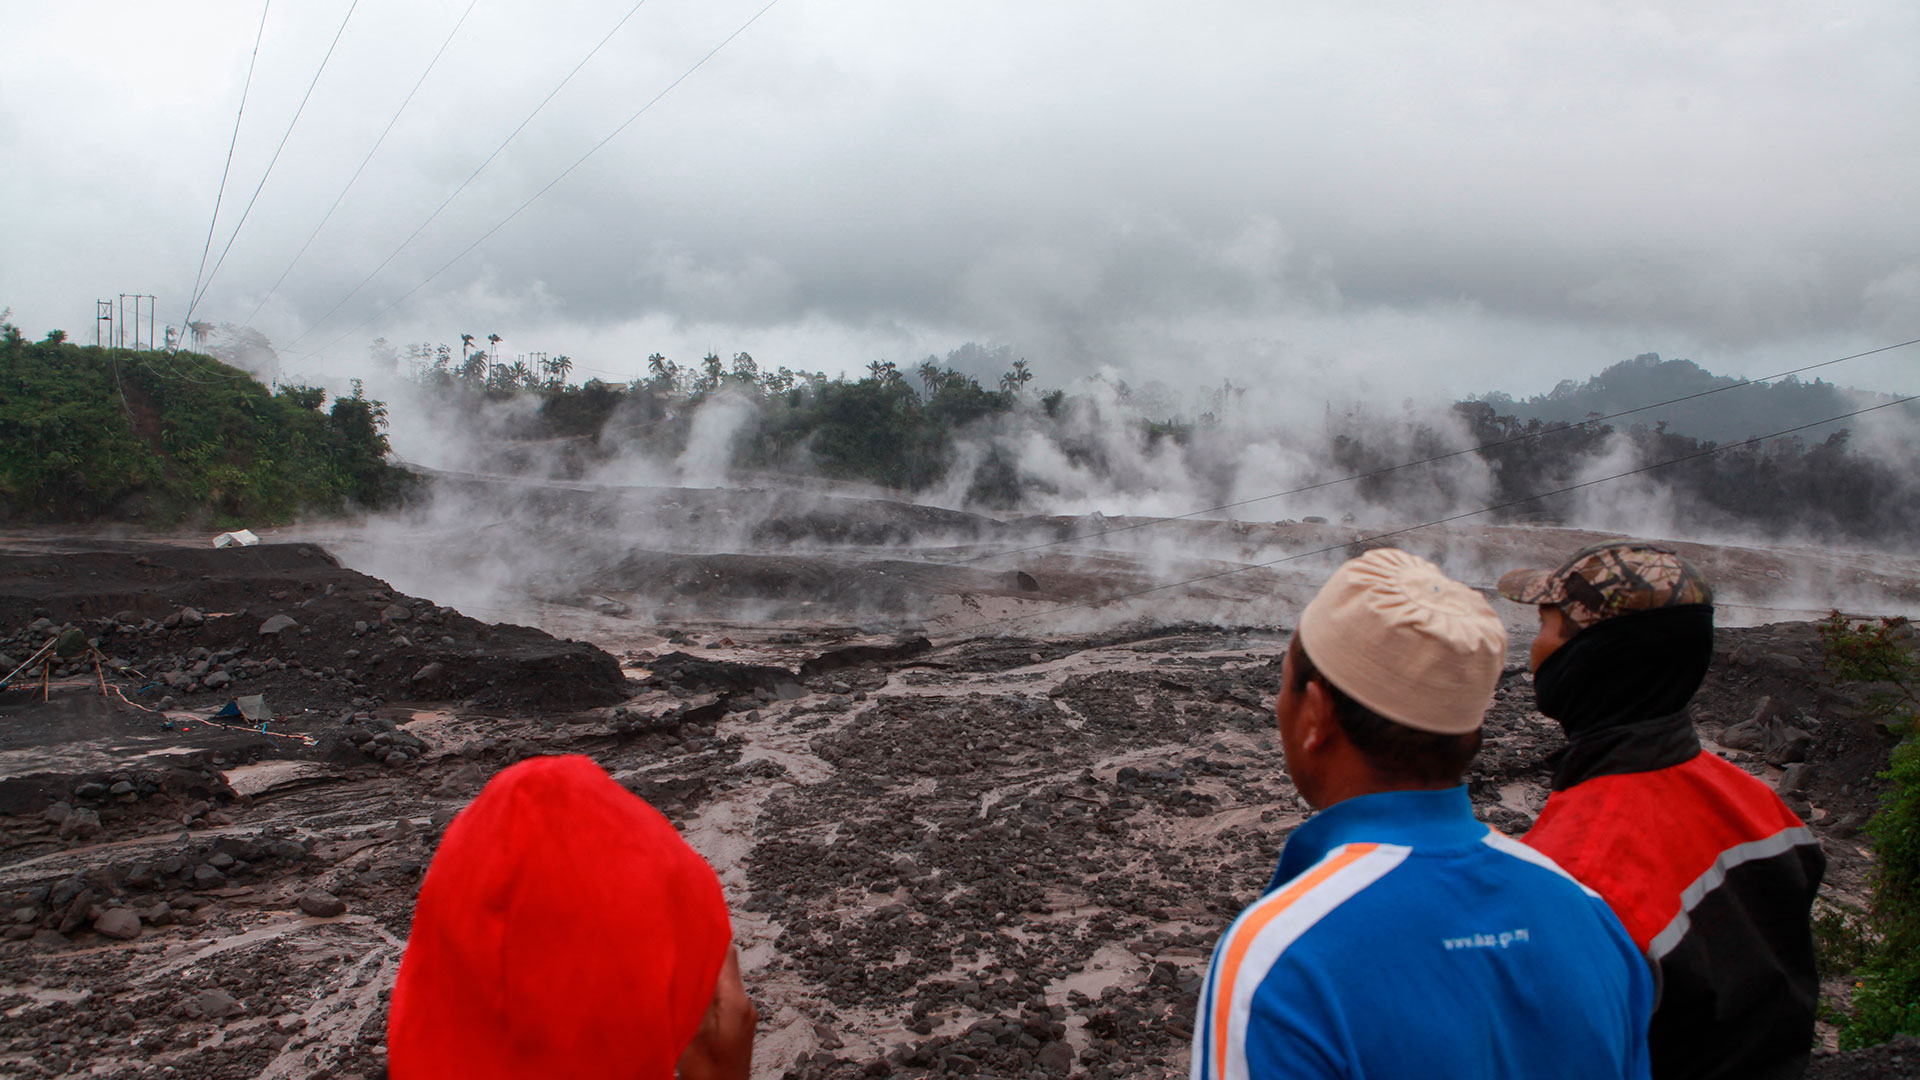 Los aldeanos observan el humo caliente del suelo luego de la erupción volcánica del Monte Semeru en Lumajang, Java Oriental, el 4 de diciembre de 2022. (Foto de PUTRI / AFP)
